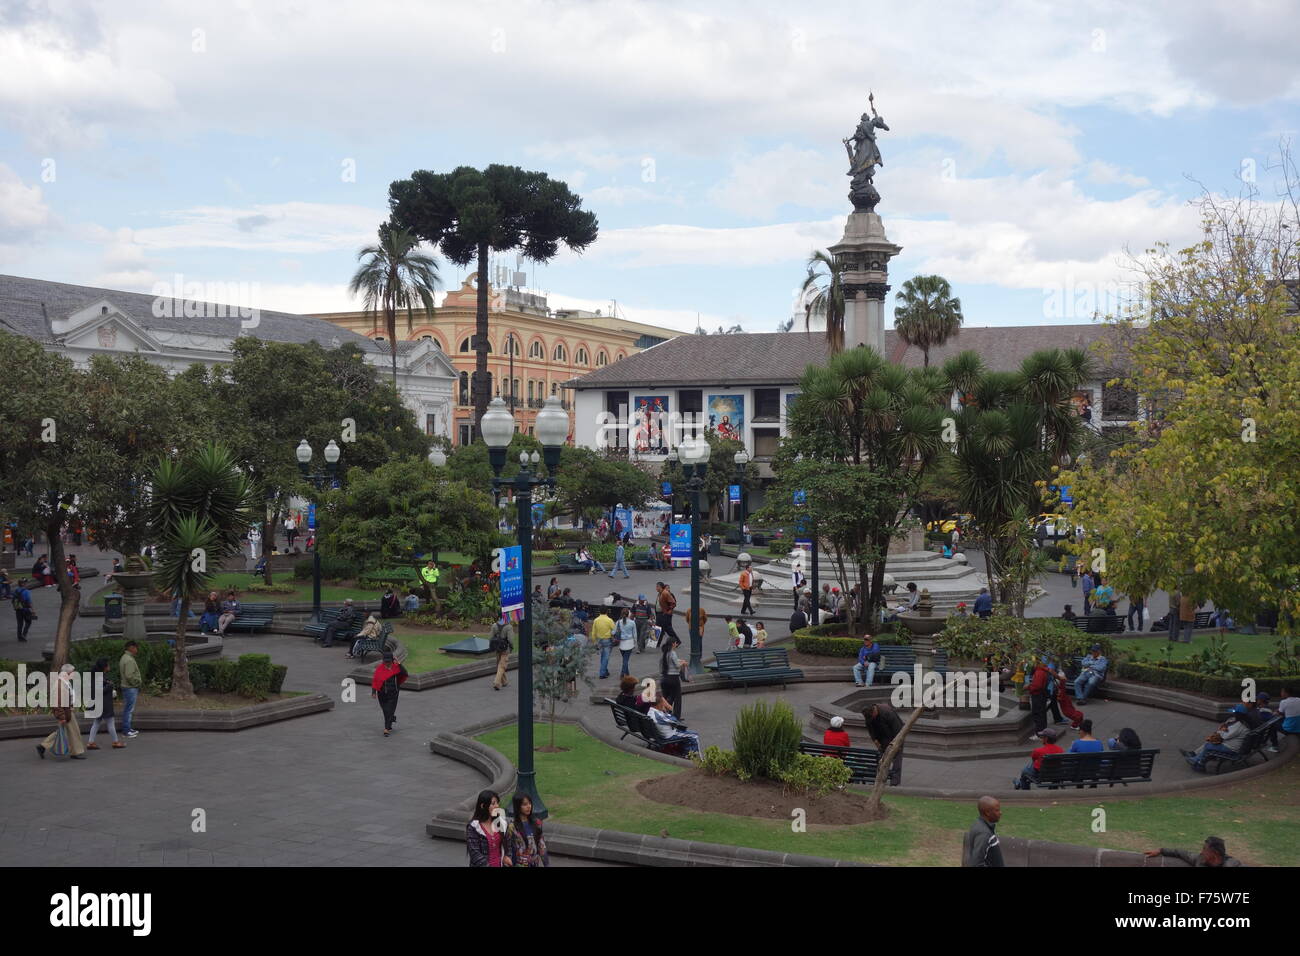 Plaza Grande, la piazza centrale nel centro storico, centro coloniale di Quito, Ecuador. Foto Stock